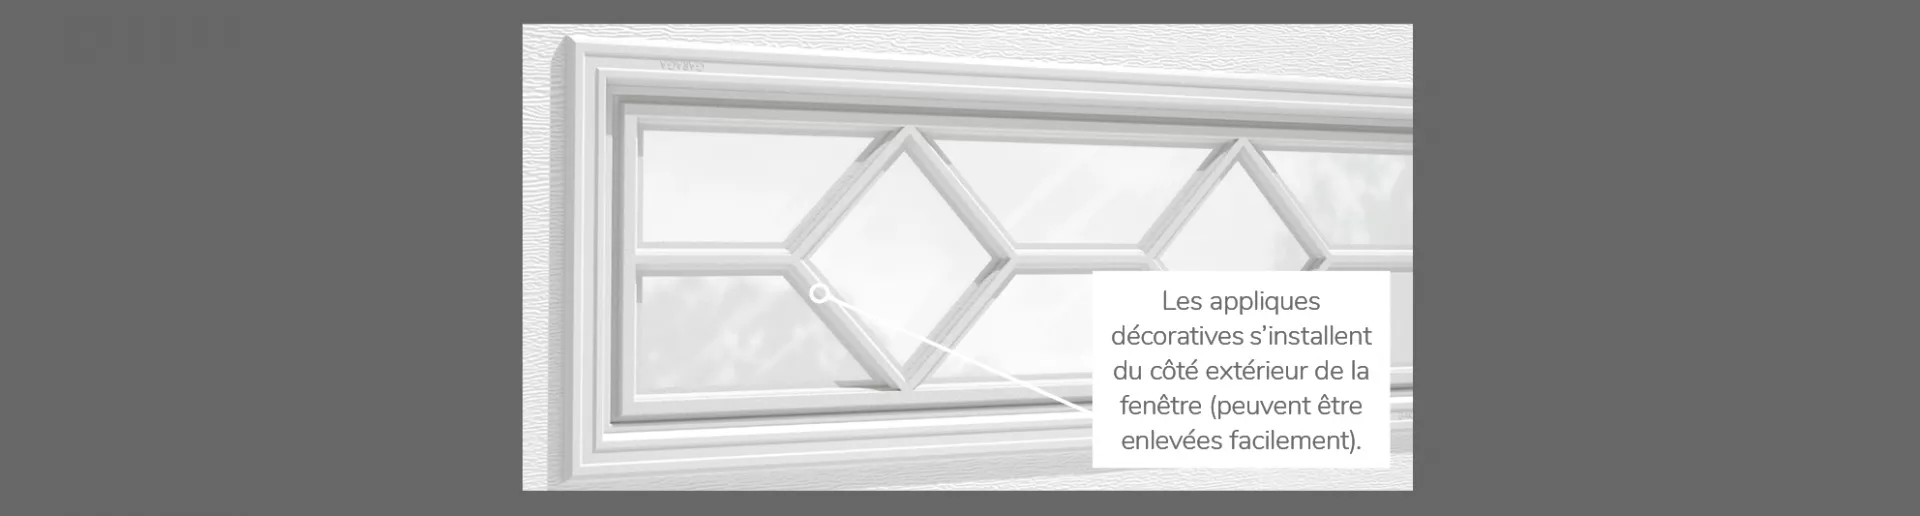 Applique Waterton, 41" x 16", disponibles pour les portes 2 parois - Polystyrene, 1 paroi - Polystyrène et non isolé